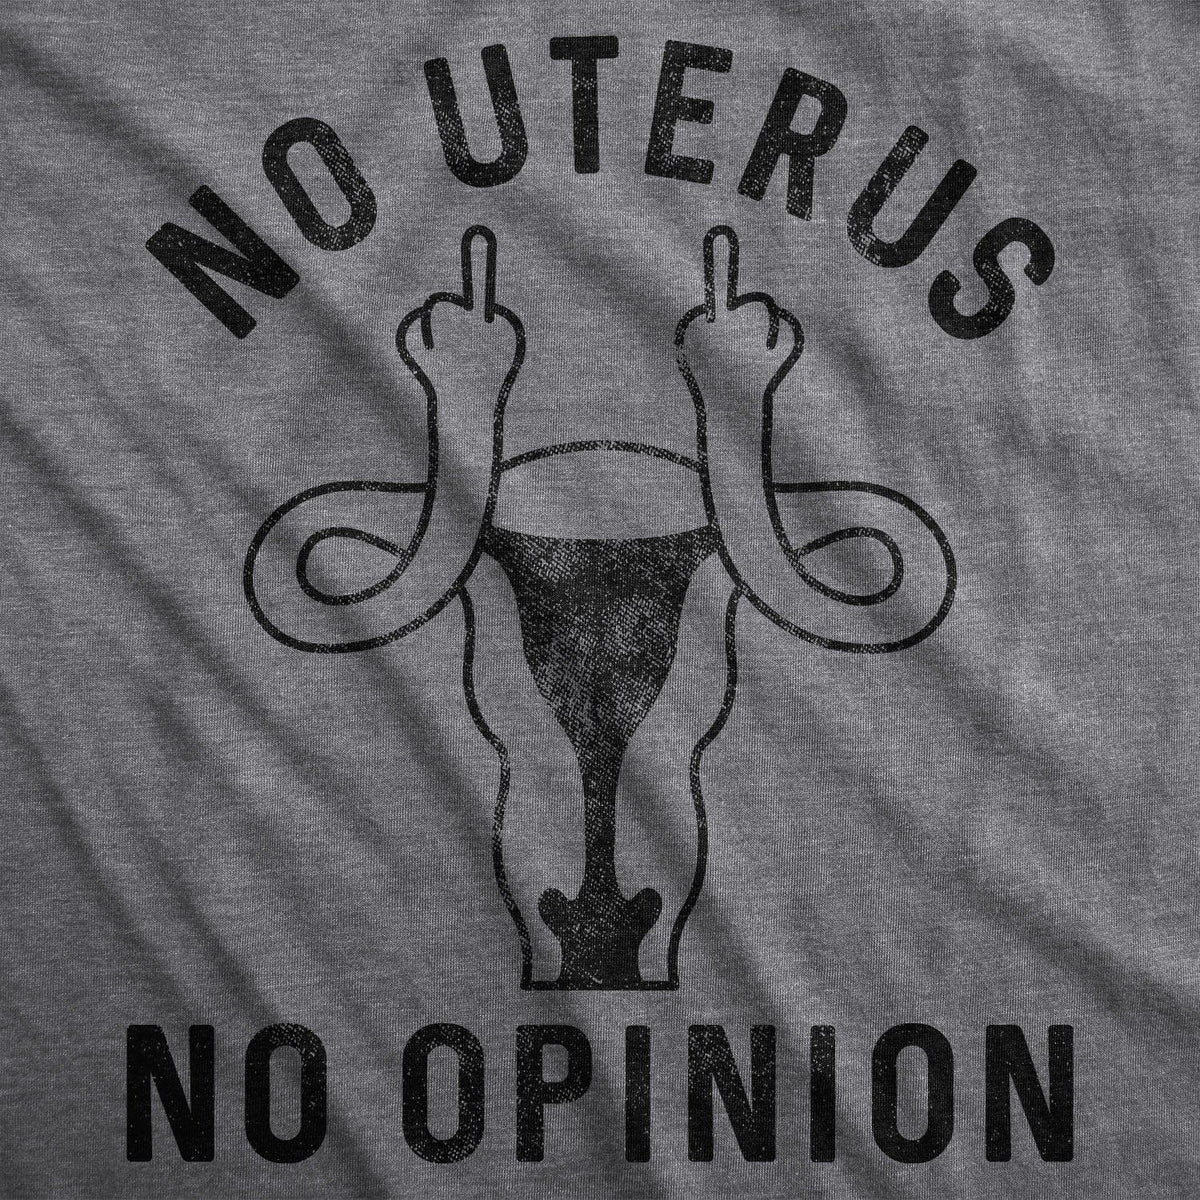 No Uterus No Opinion Women&#39;s Tshirt  -  Crazy Dog T-Shirts